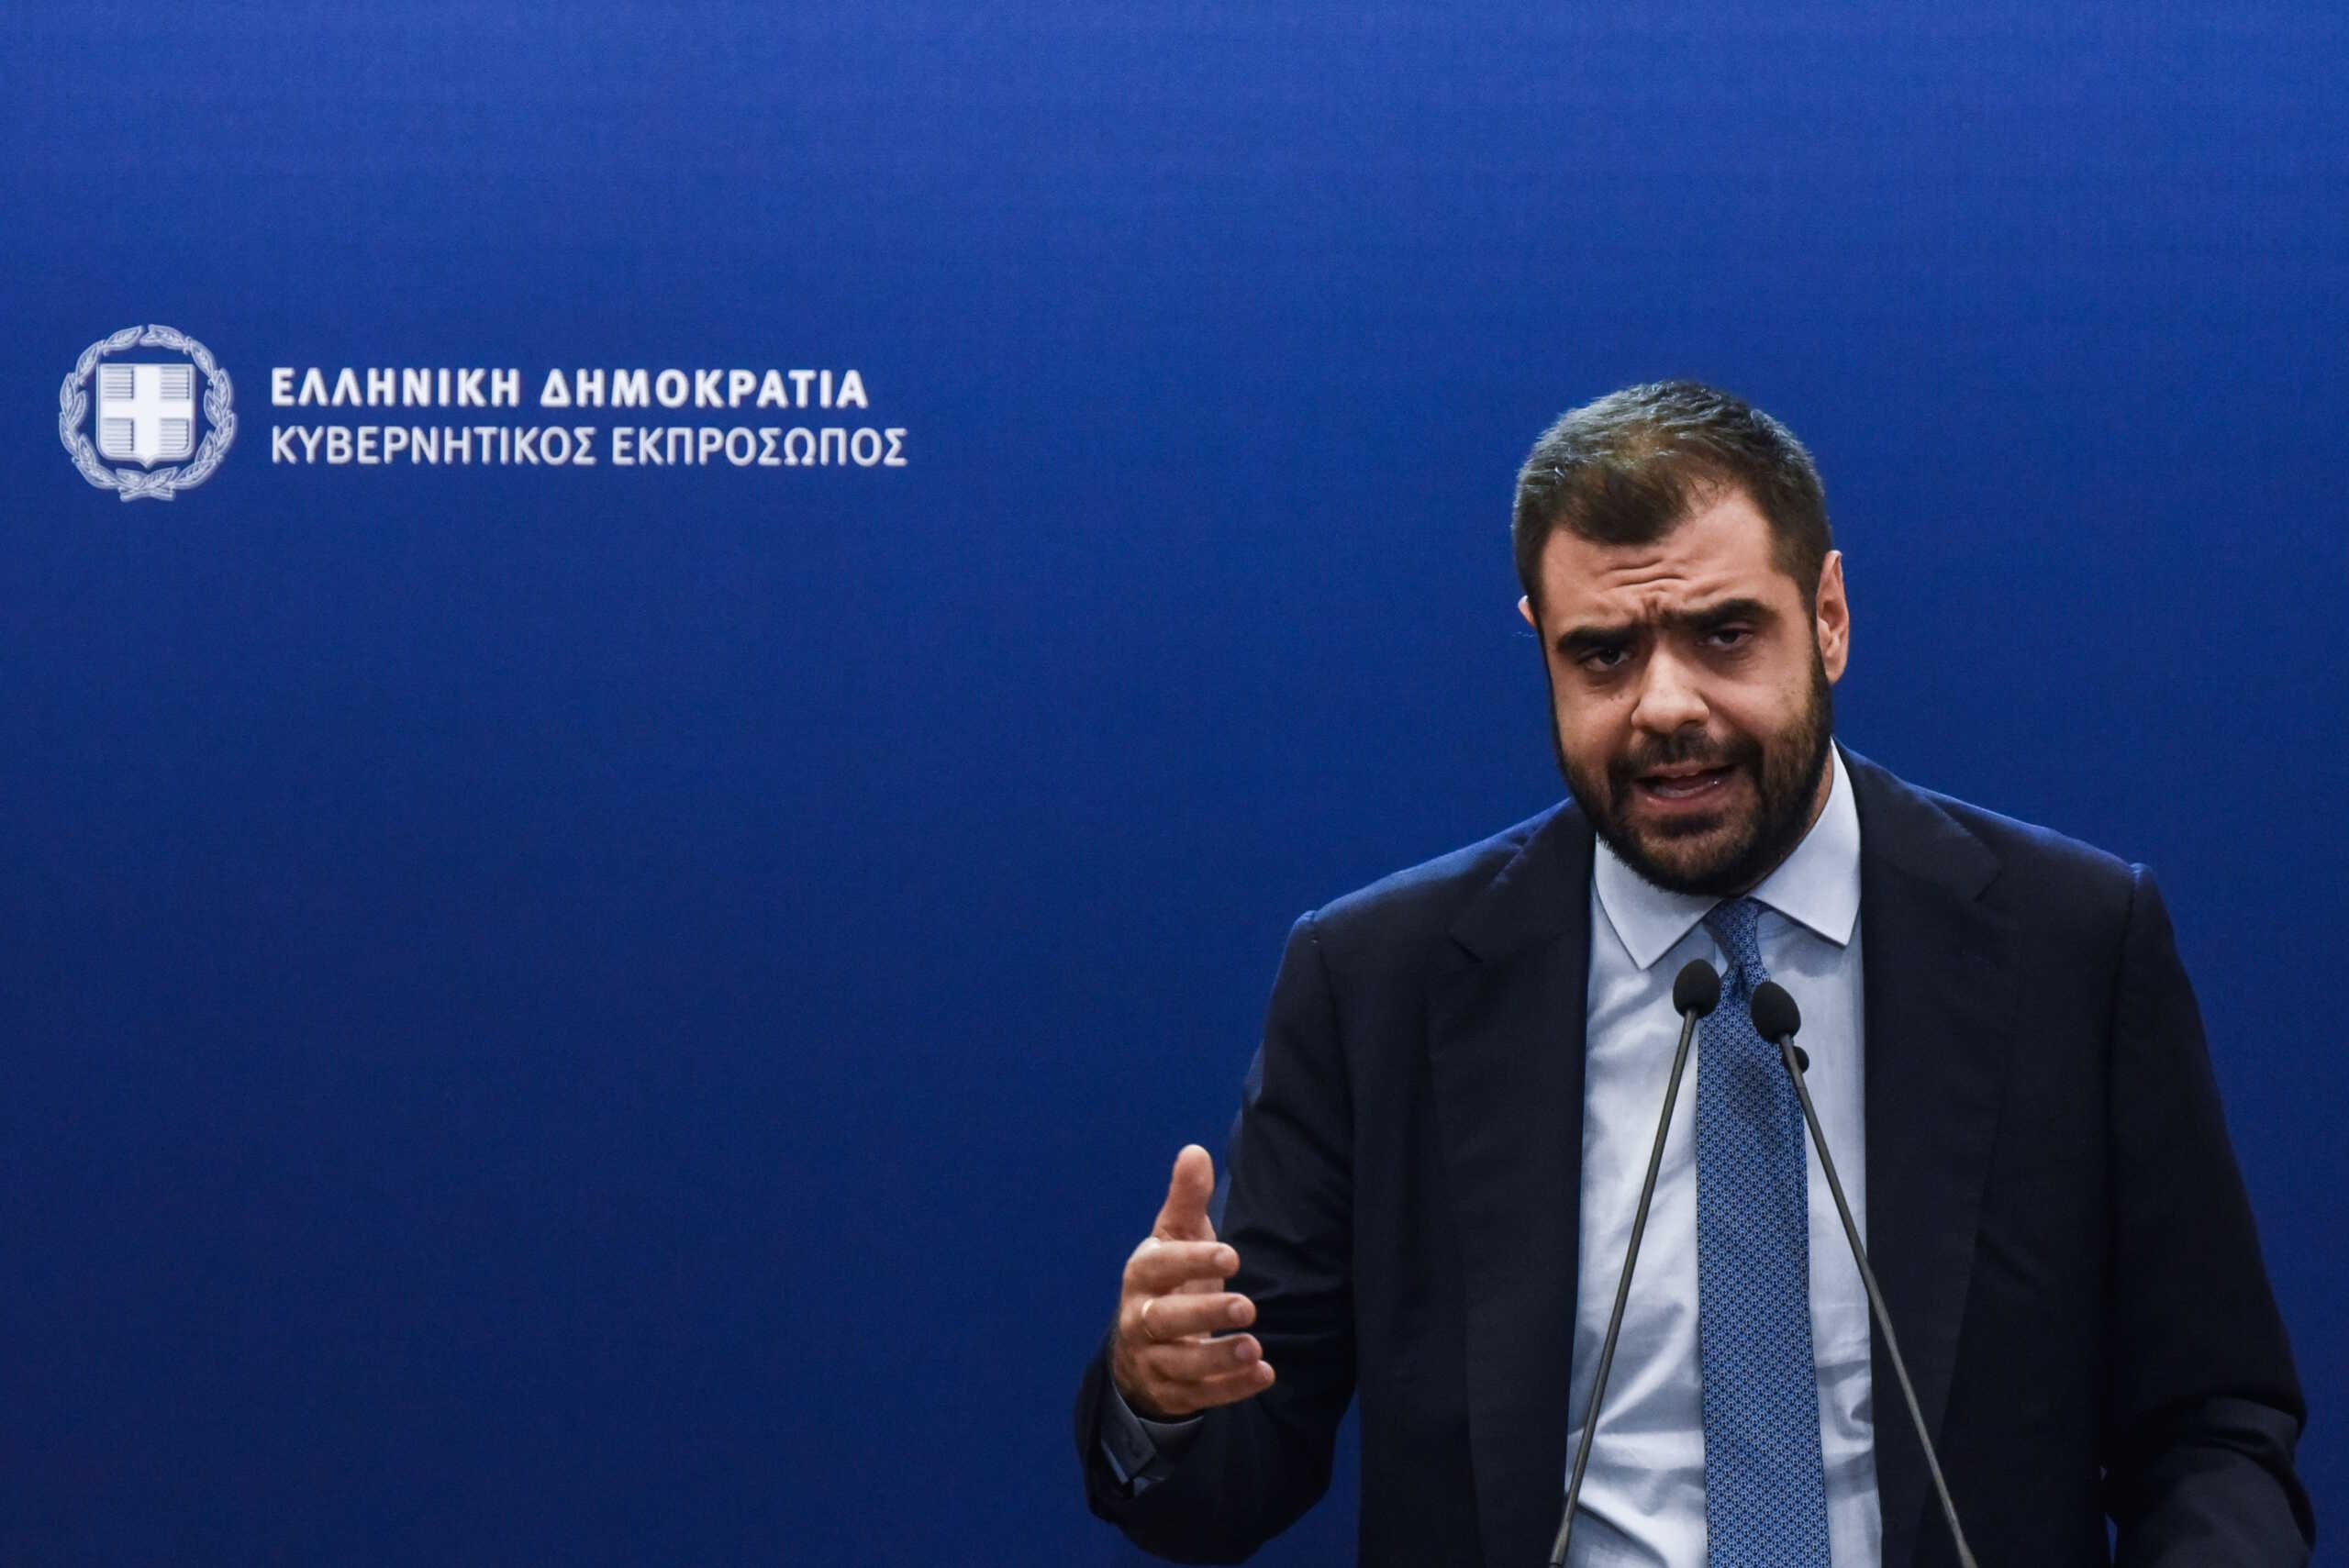 Παύλος Μαρινάκης σε ΣΥΡΙΖΑ: Αδιανόητο να διακινούνται fake news για εθνικά θέματα